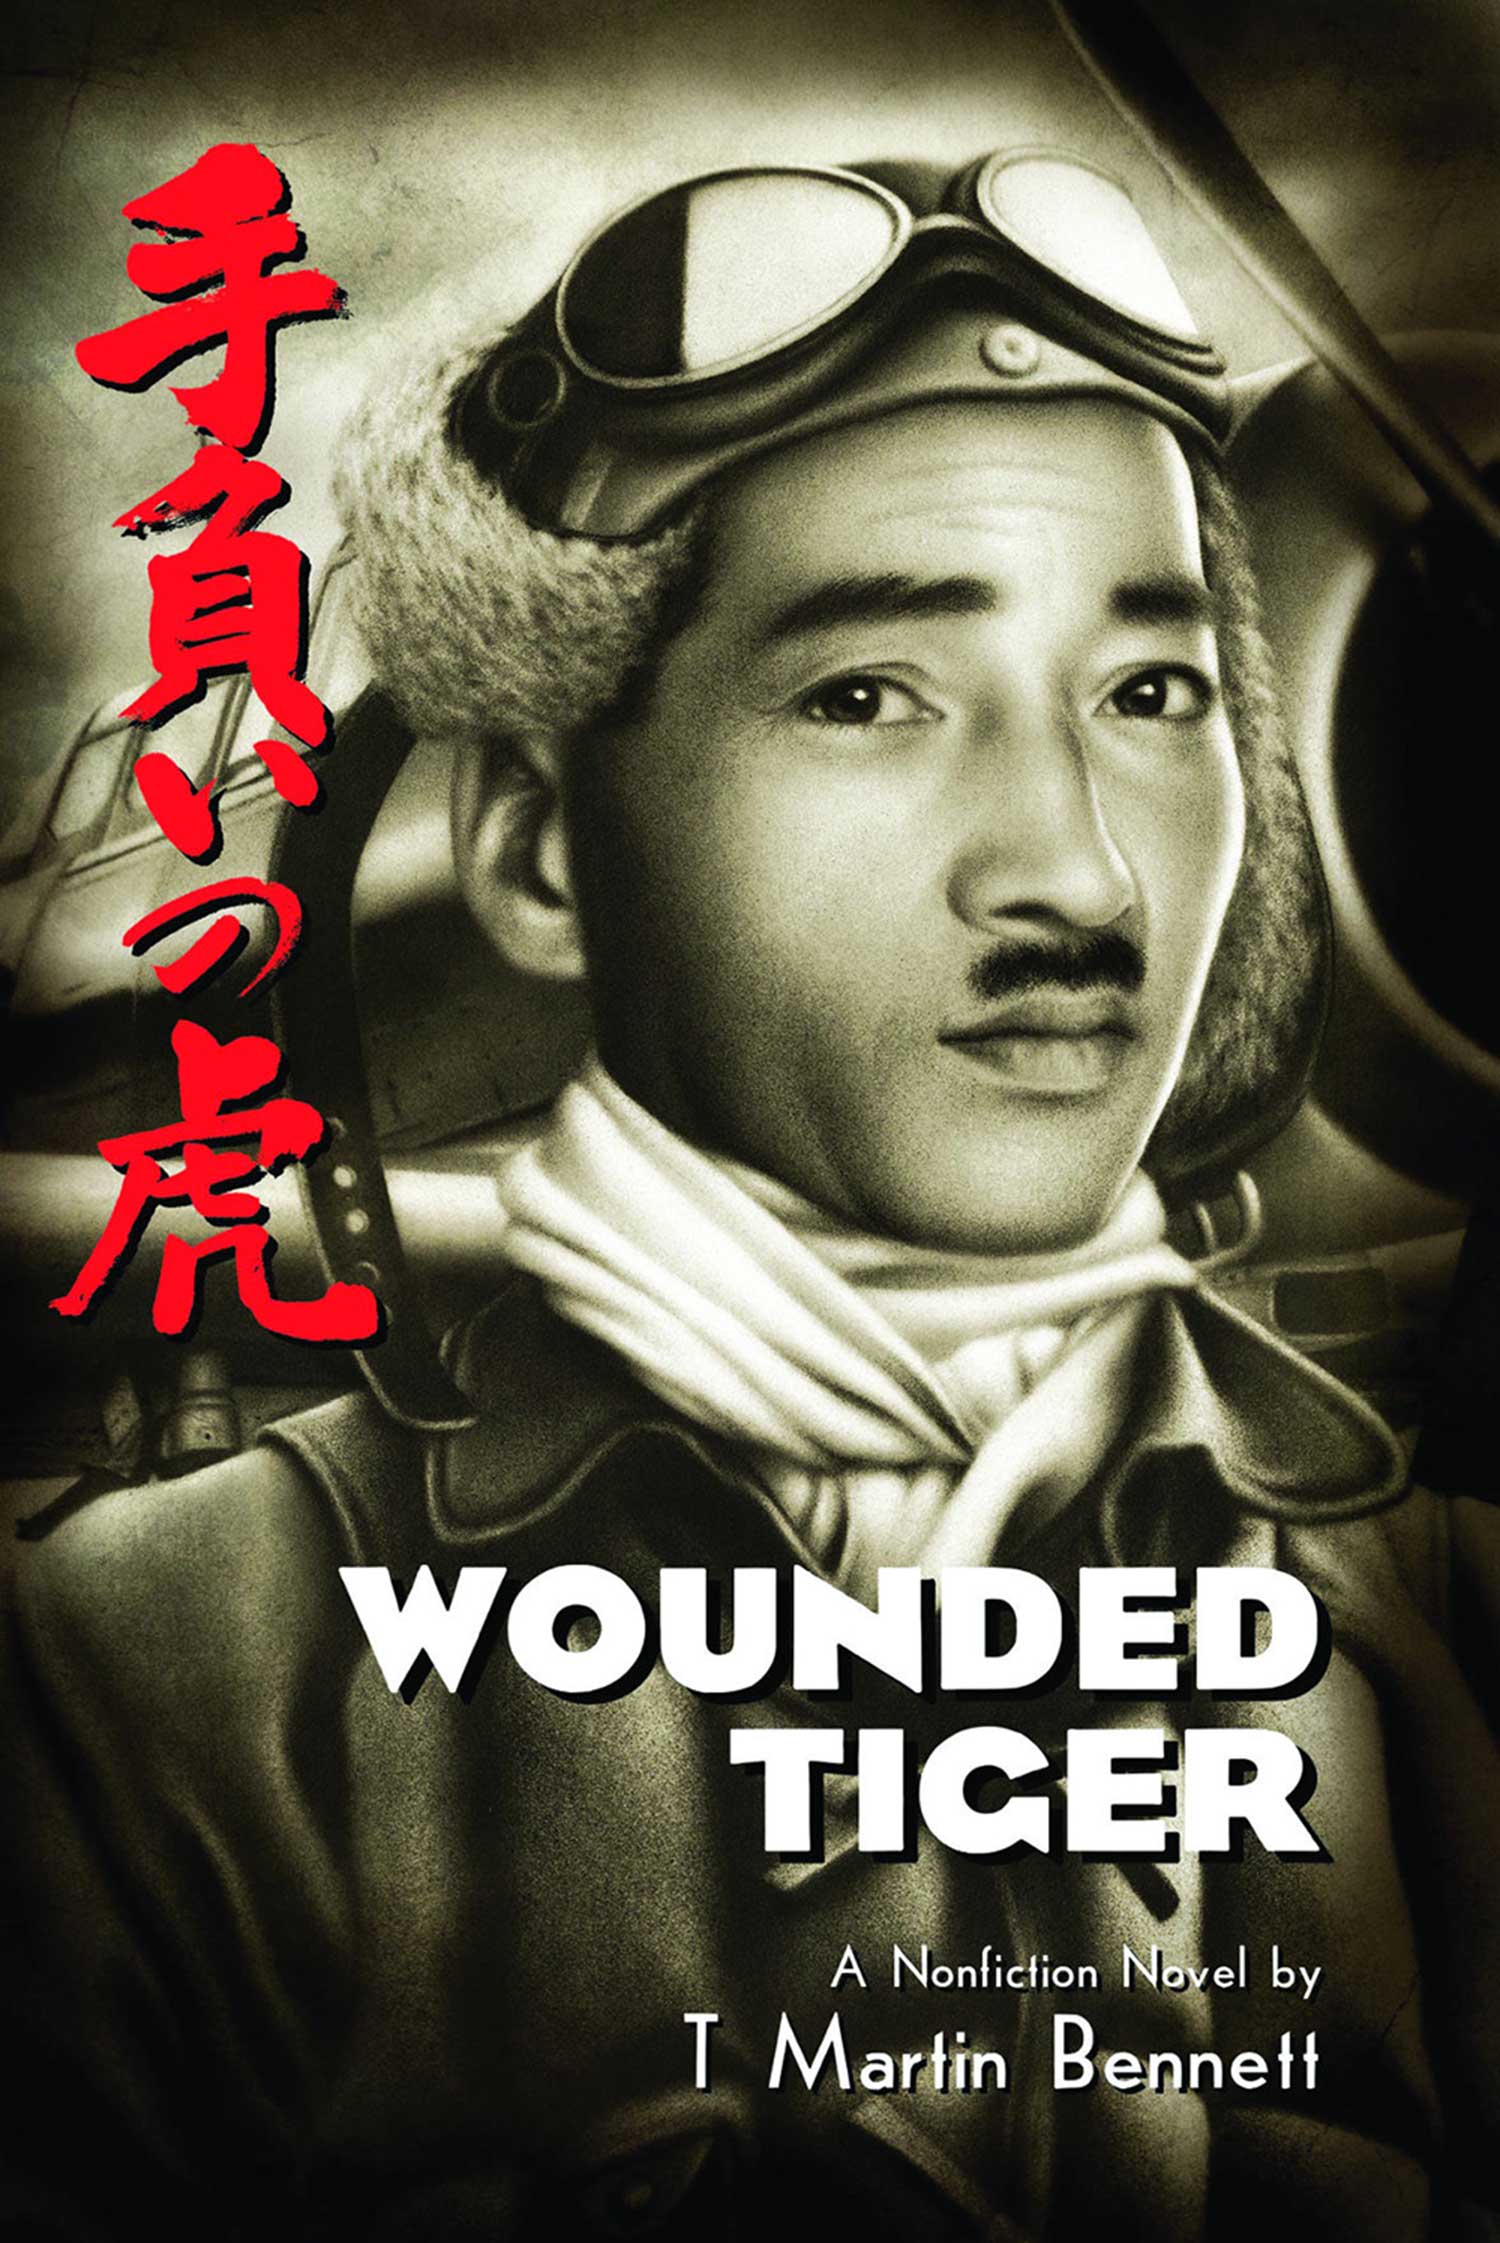 "Le tigre blessé" Mitsuo Fuchida par T. Martin Bennett. -